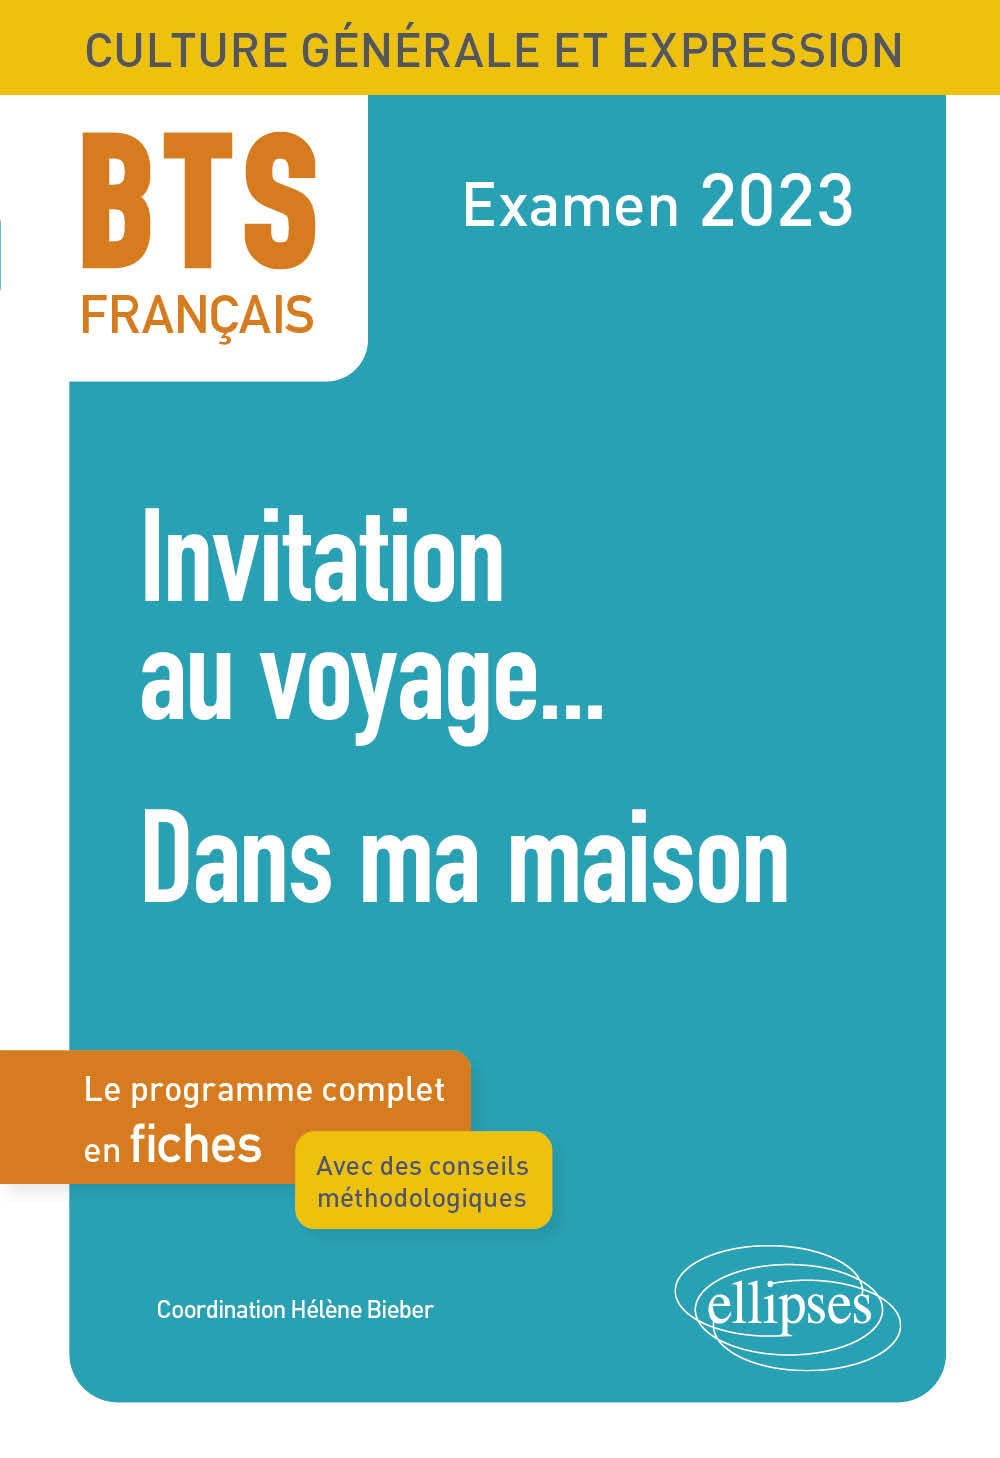 Invitation au voyage..., dans ma maison : BTS français, culture générale et expression, le programme